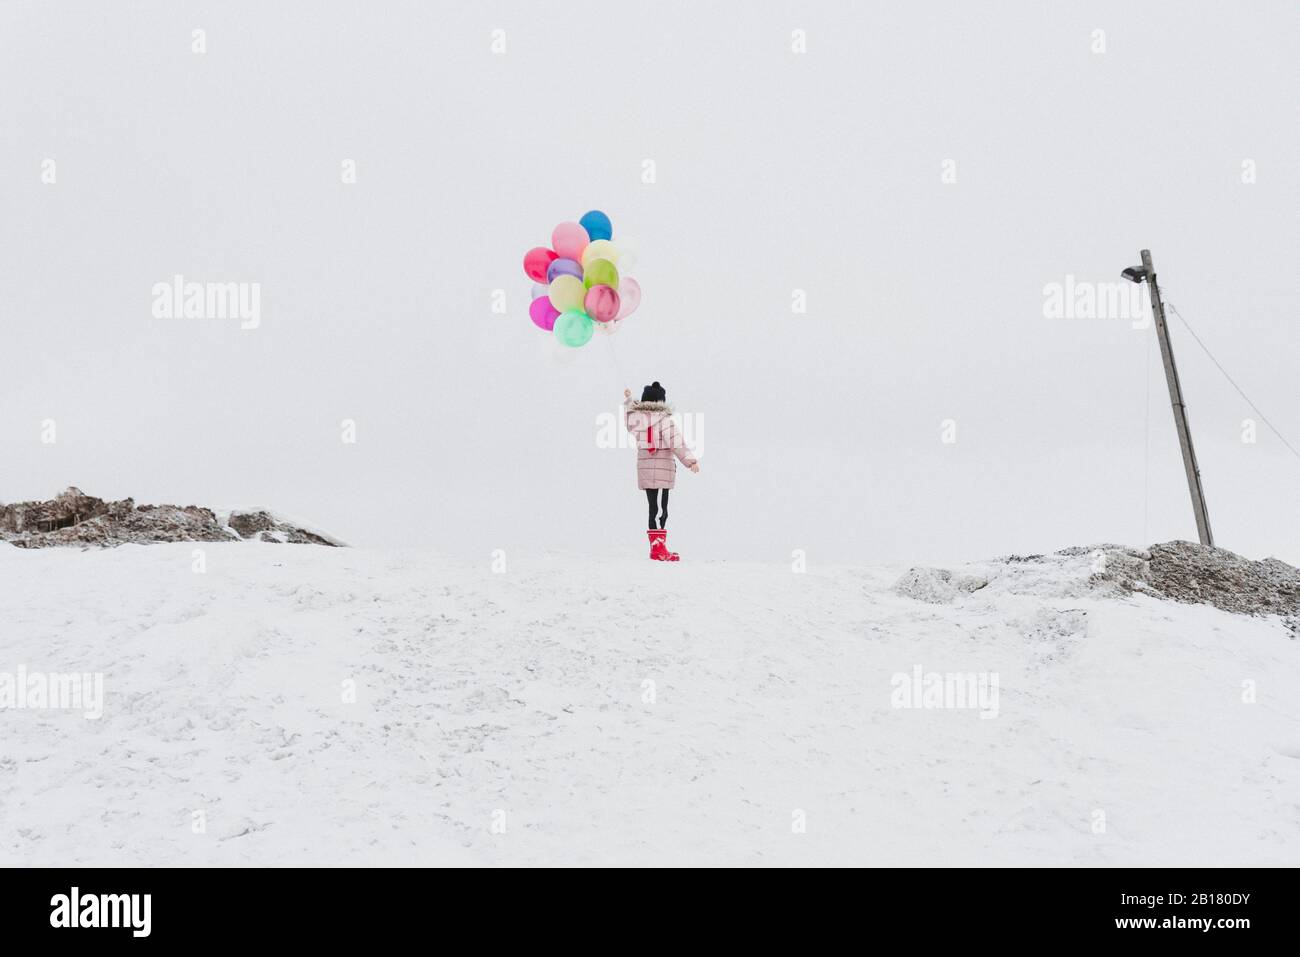 Rückansicht des Mädchens mit Ballons, die im Winter auf einem schneebedeckten Hügel stehen Stockfoto